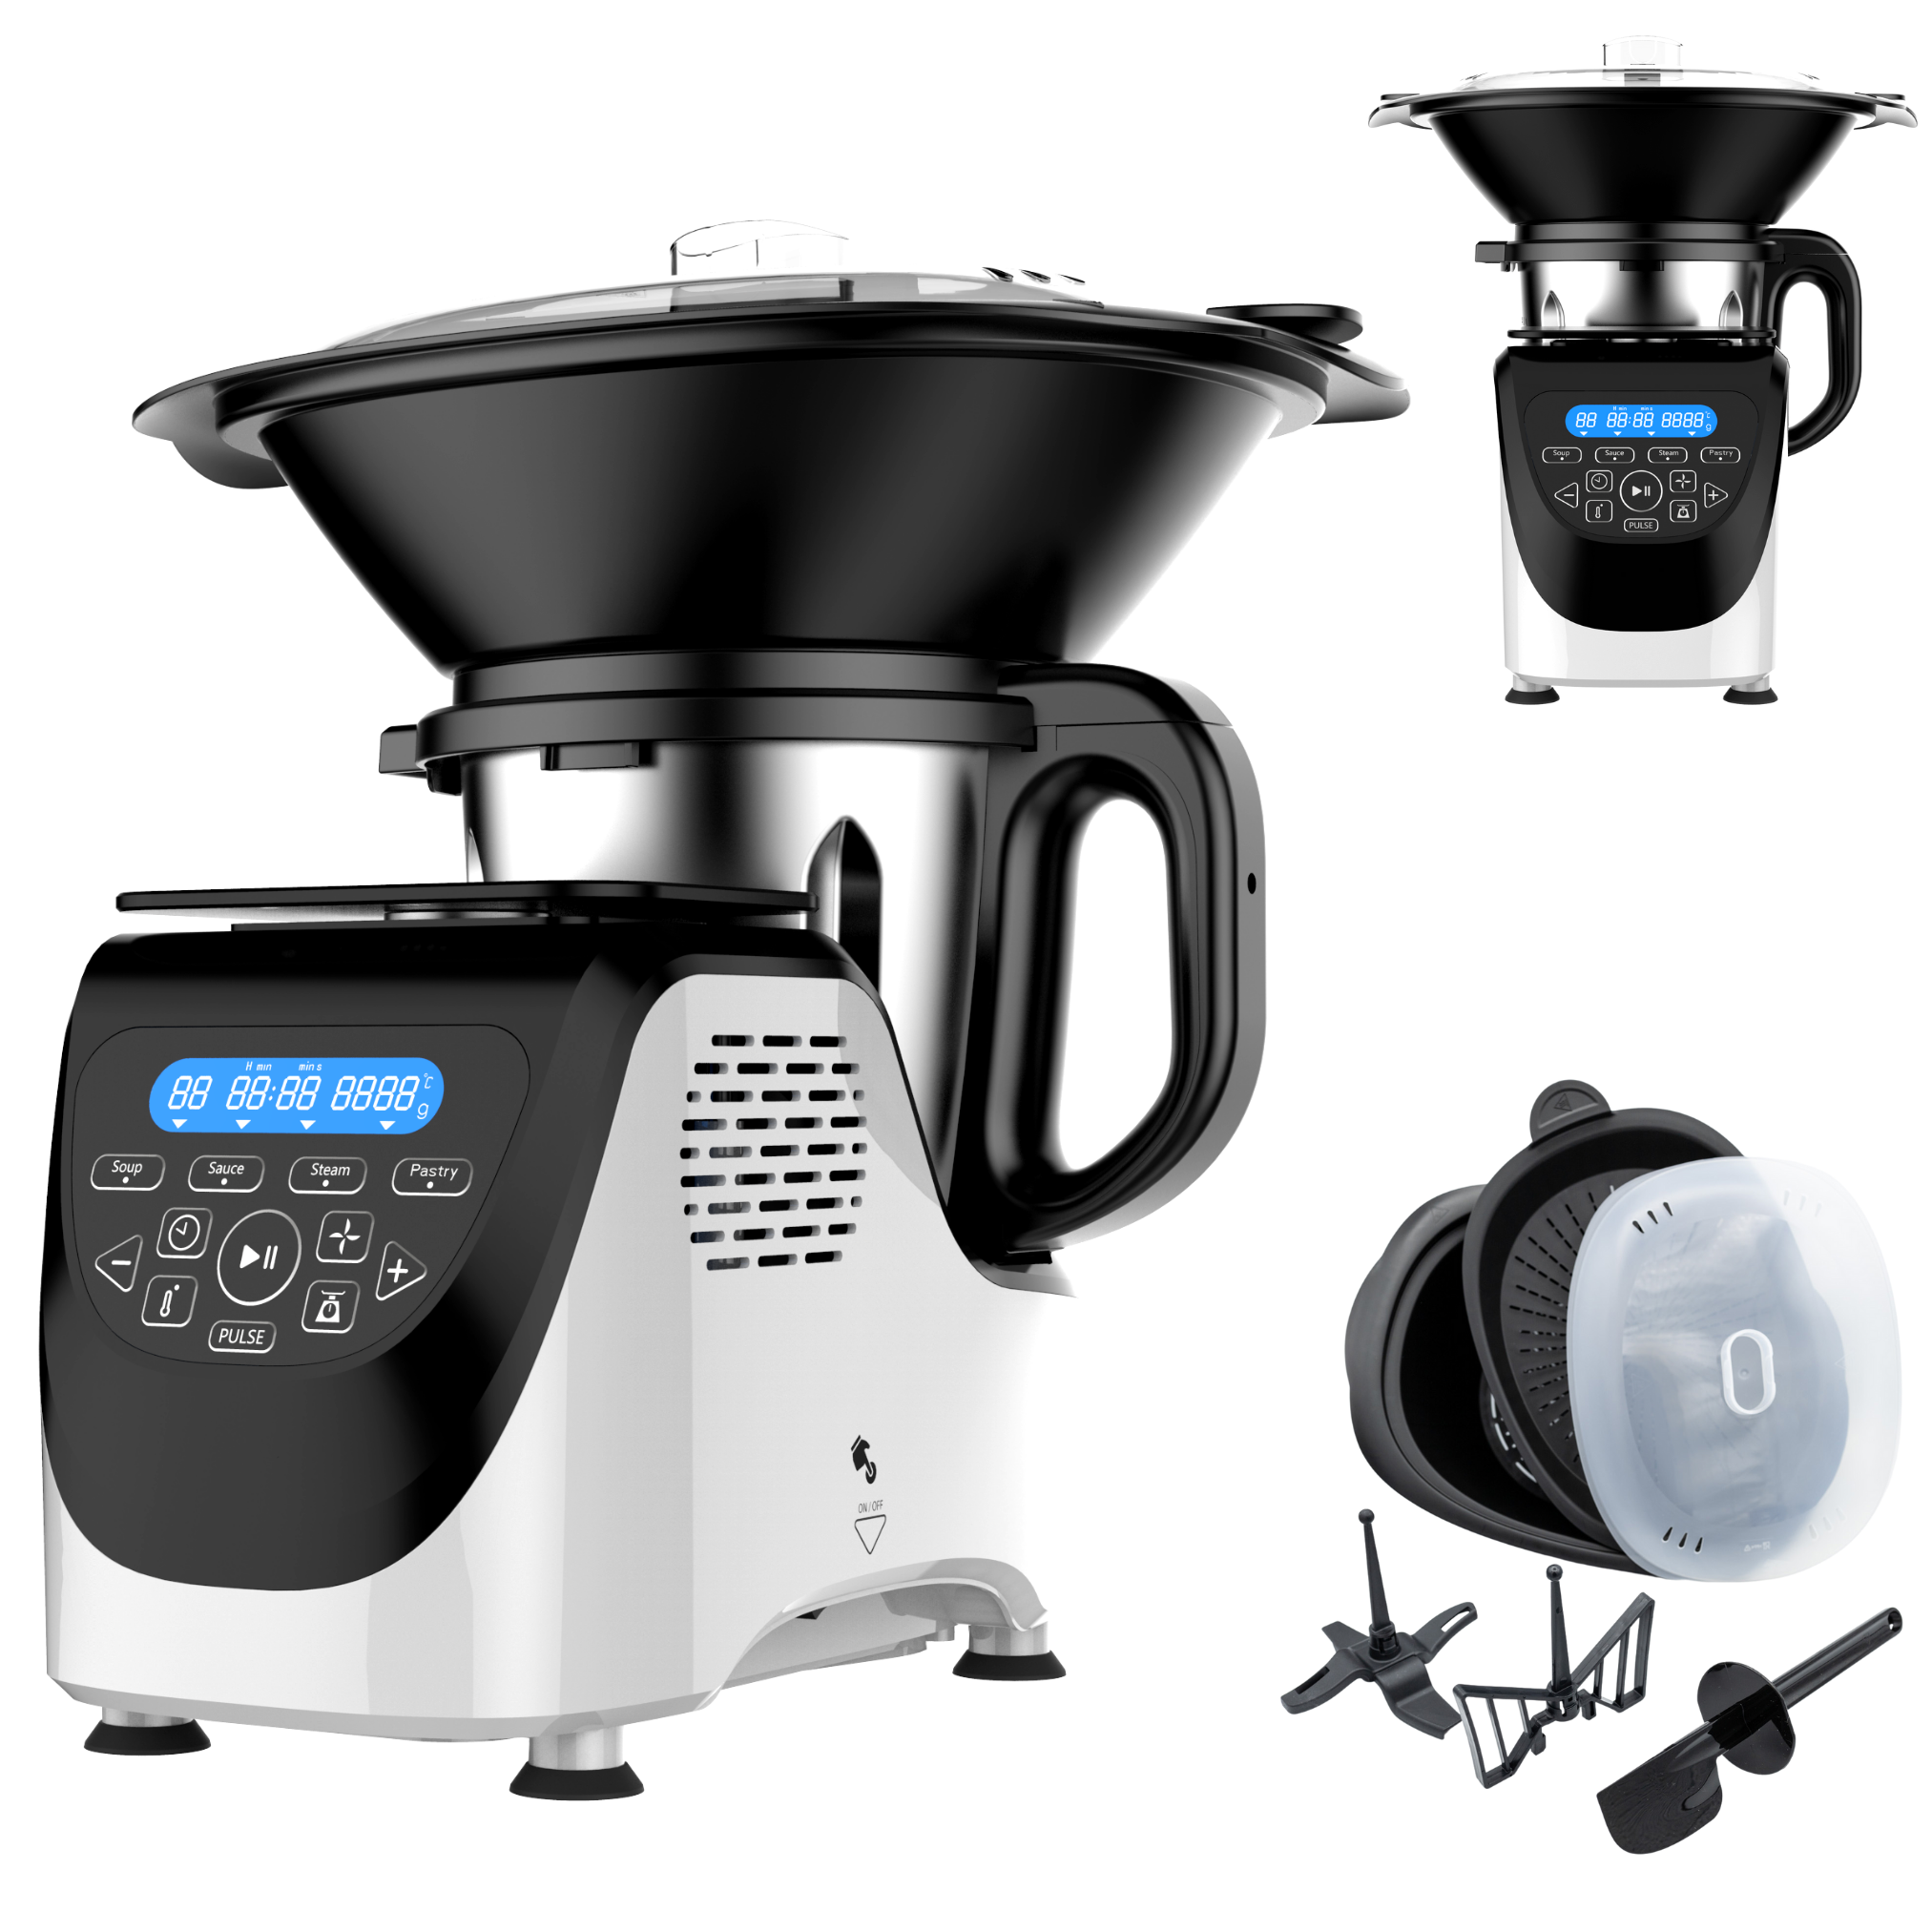 BEST Kochfunktion weiß Kitchen Watt) Robot ® mit l, 1200 Chef-O-Matic 3 (Rührschüsselkapazität: DIRECT Küchenmaschine